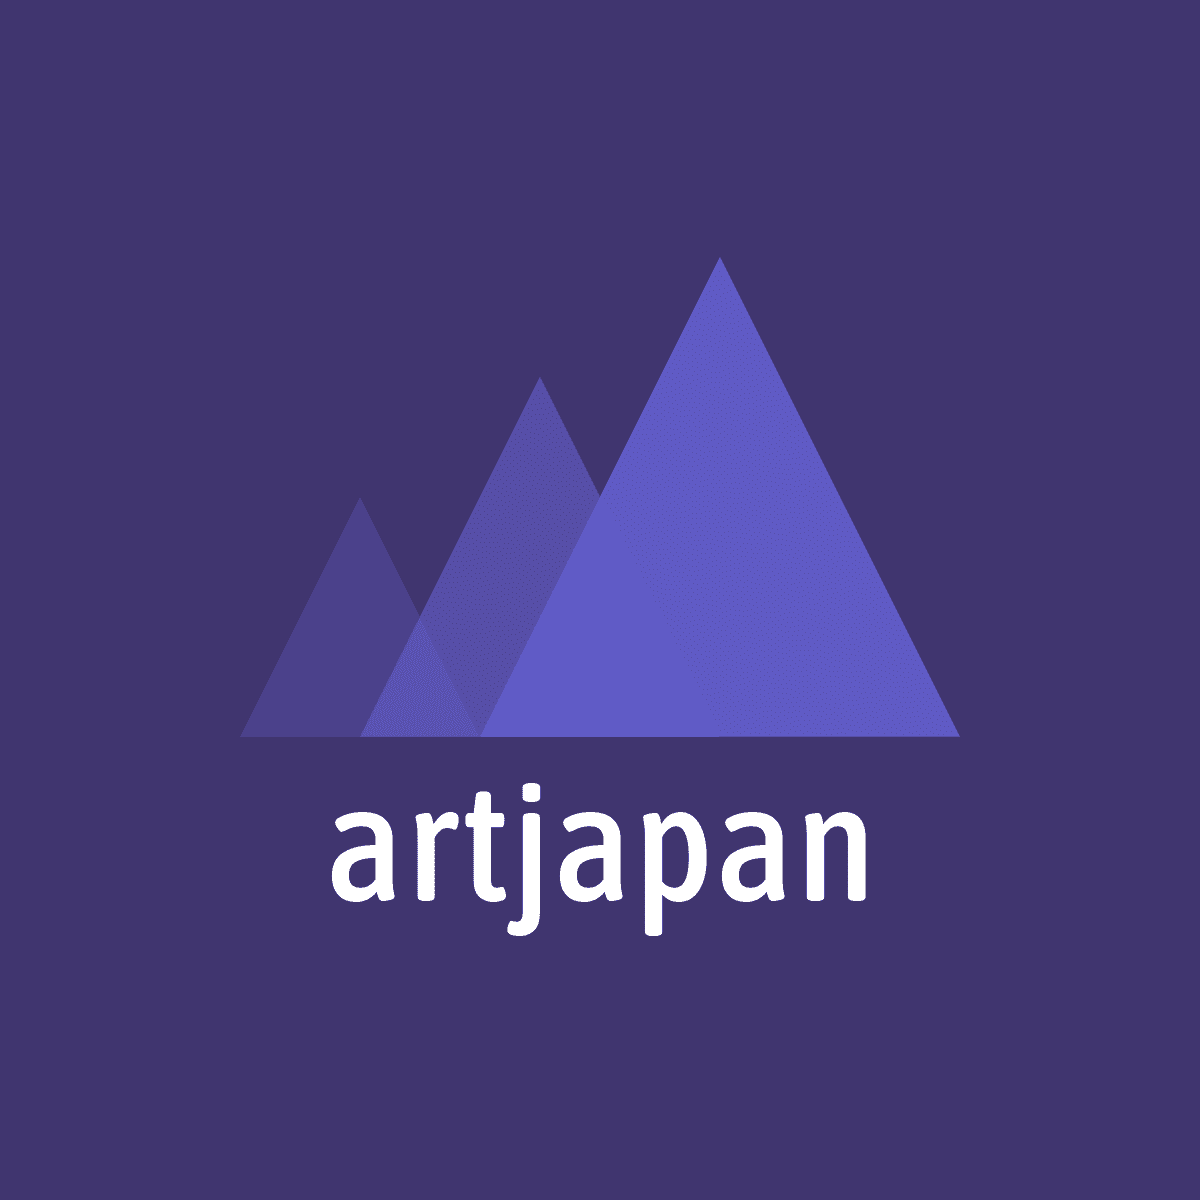 artjapan gallery